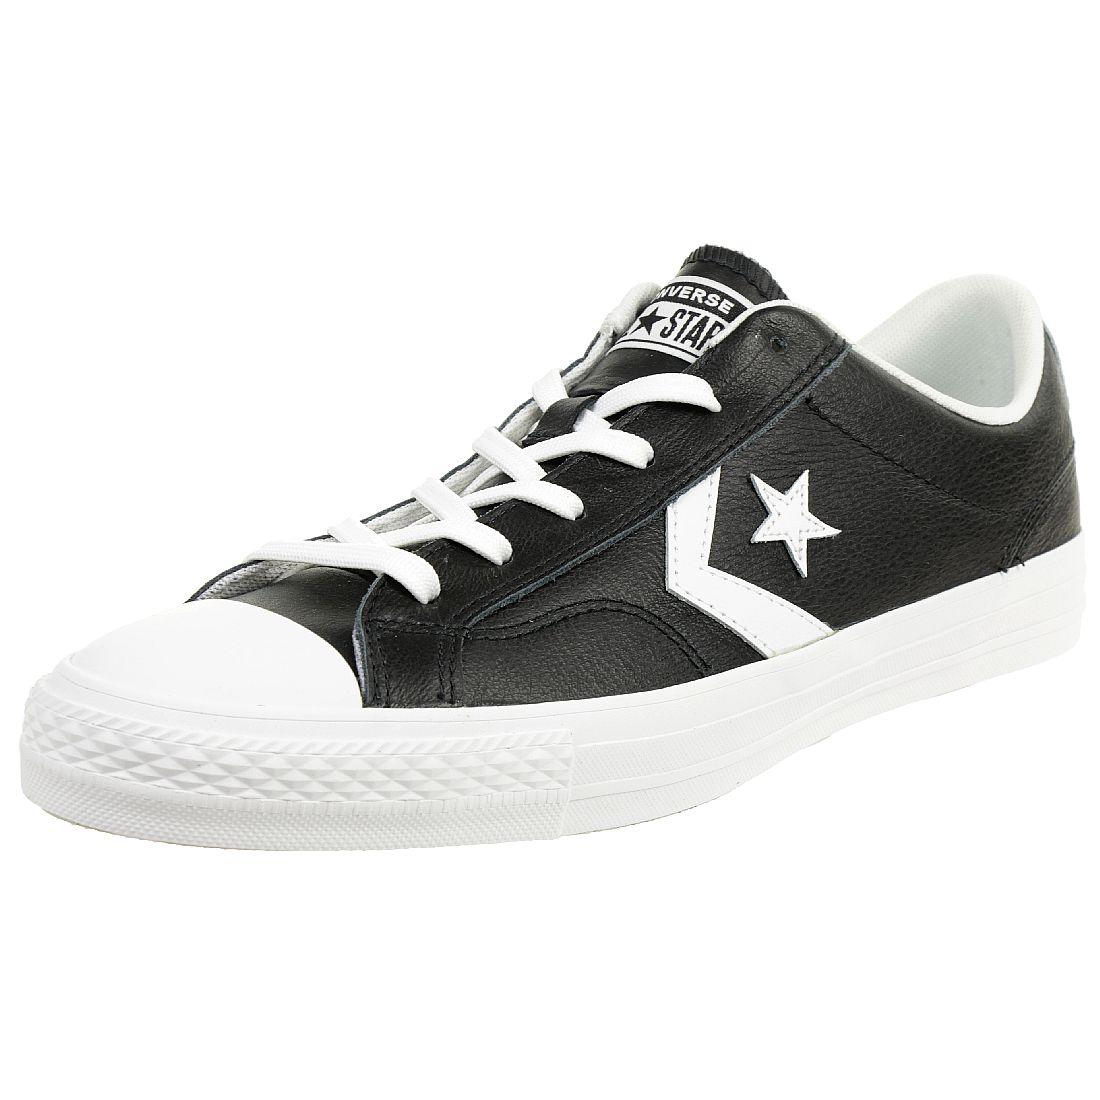 Converse STAR PLAYER OX Schuhe Sneaker Leder schwarz 159780C 36.5 EU